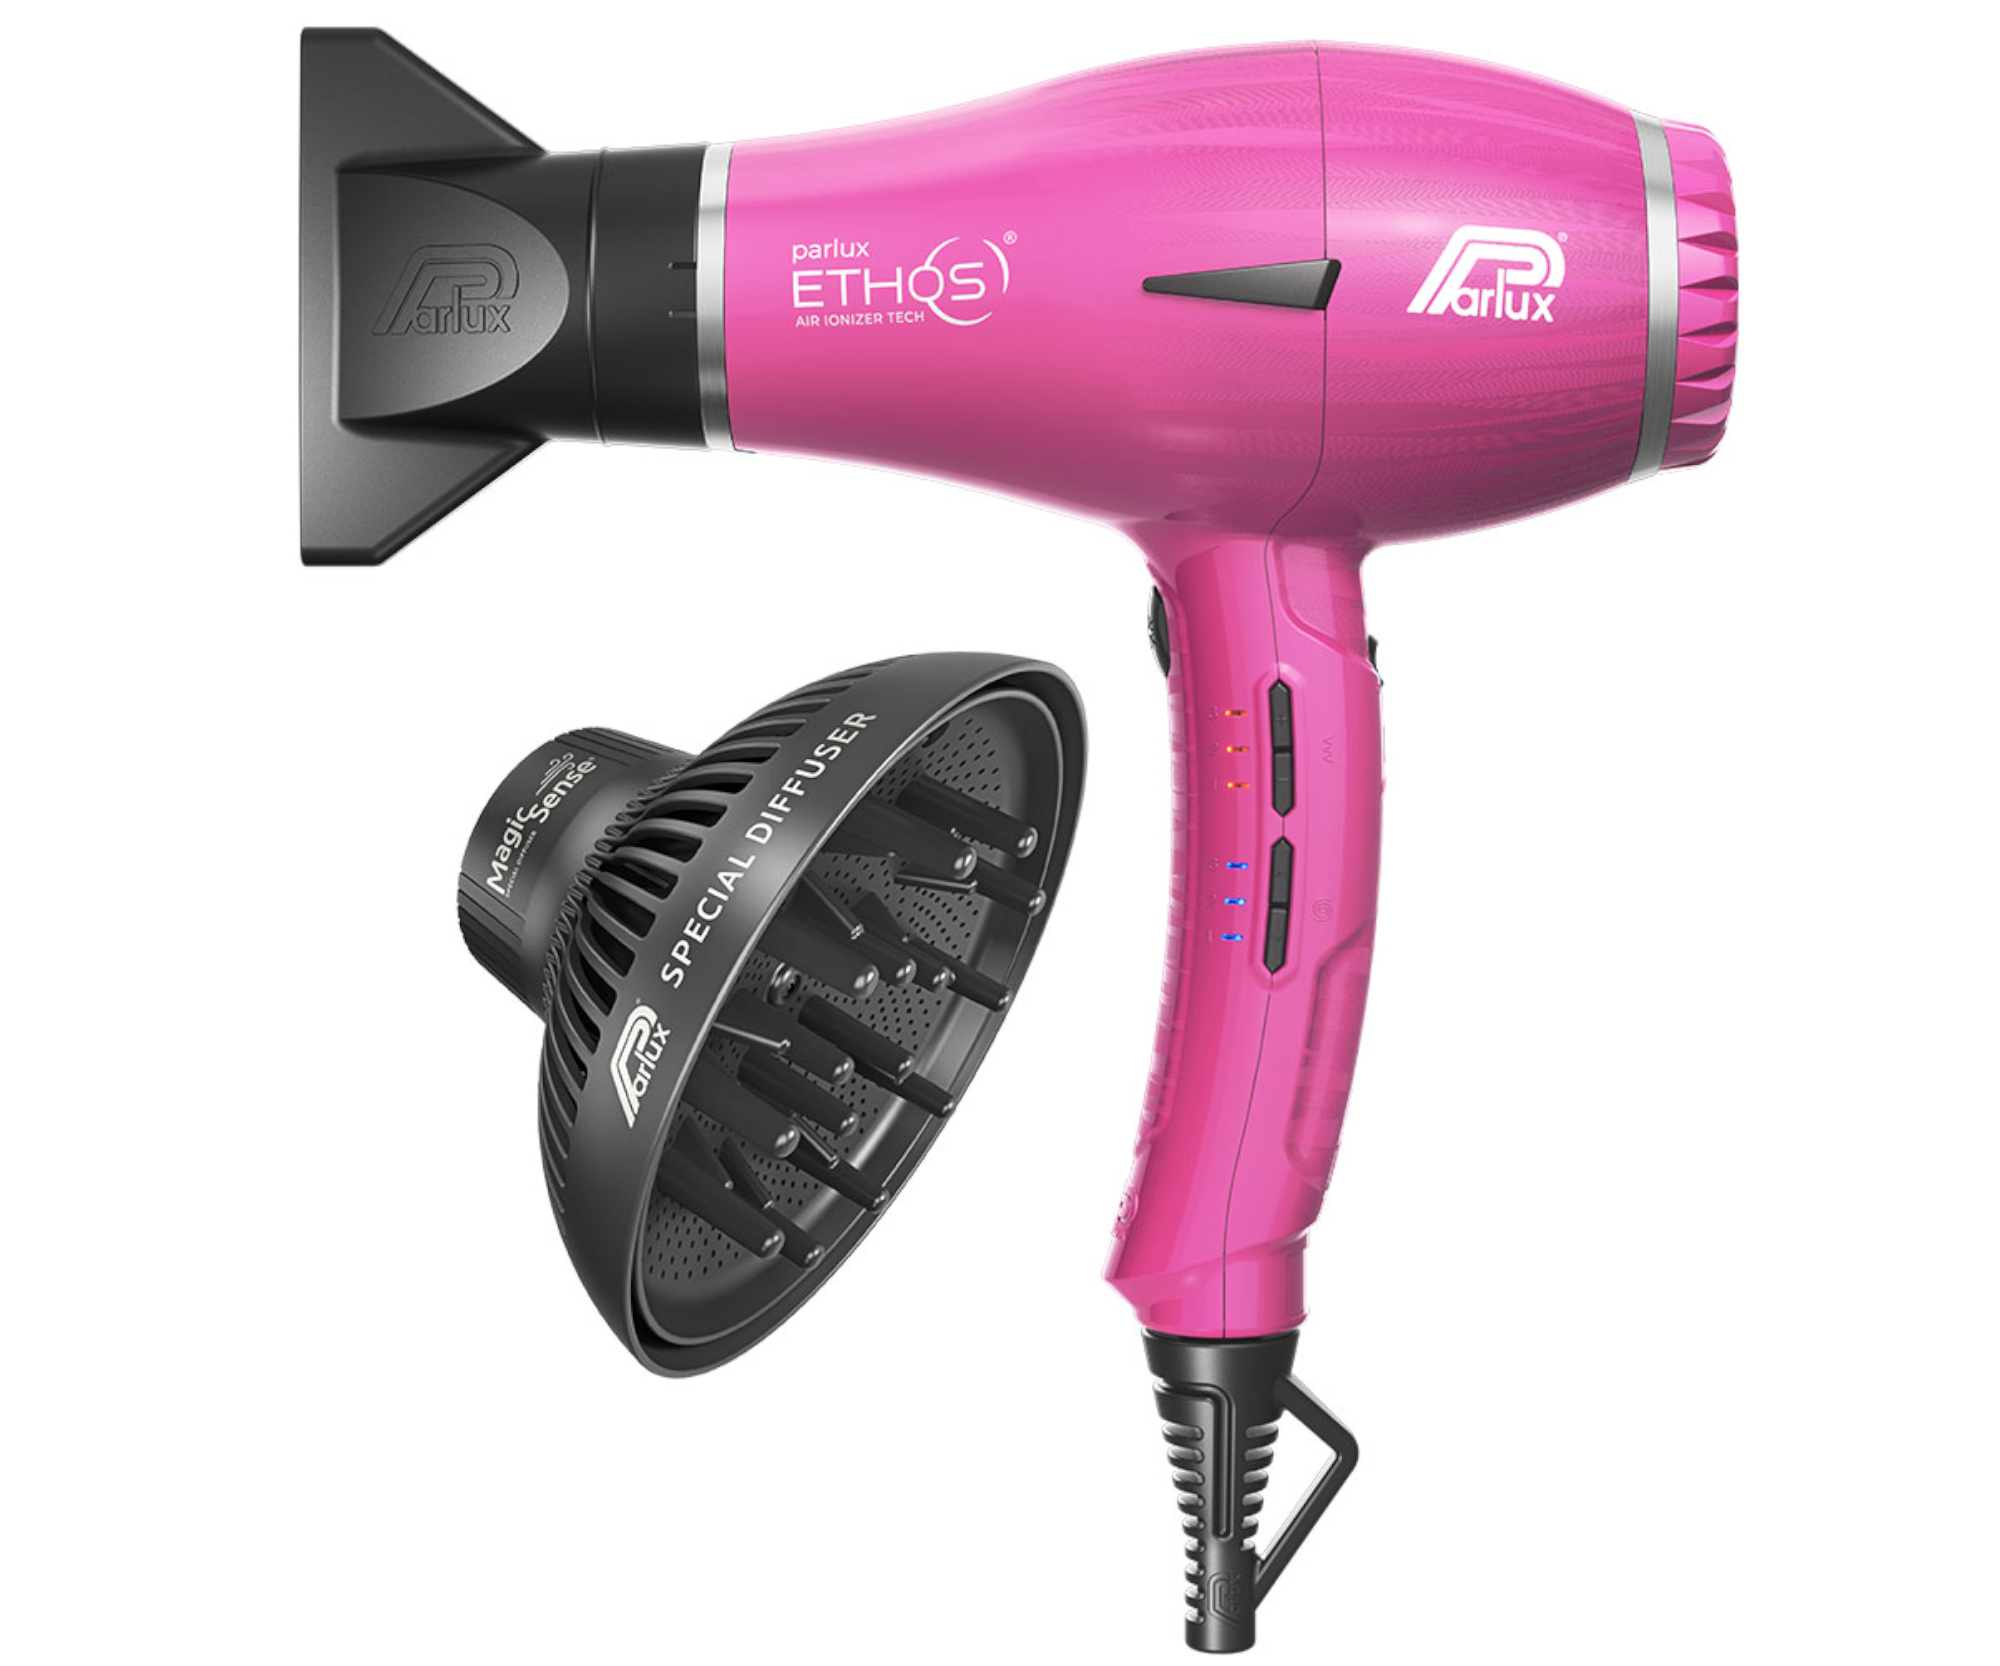 Profesionální fén na vlasy s difuzérem Parlux Ethos - 2300 W, růžový + dárek zdarma